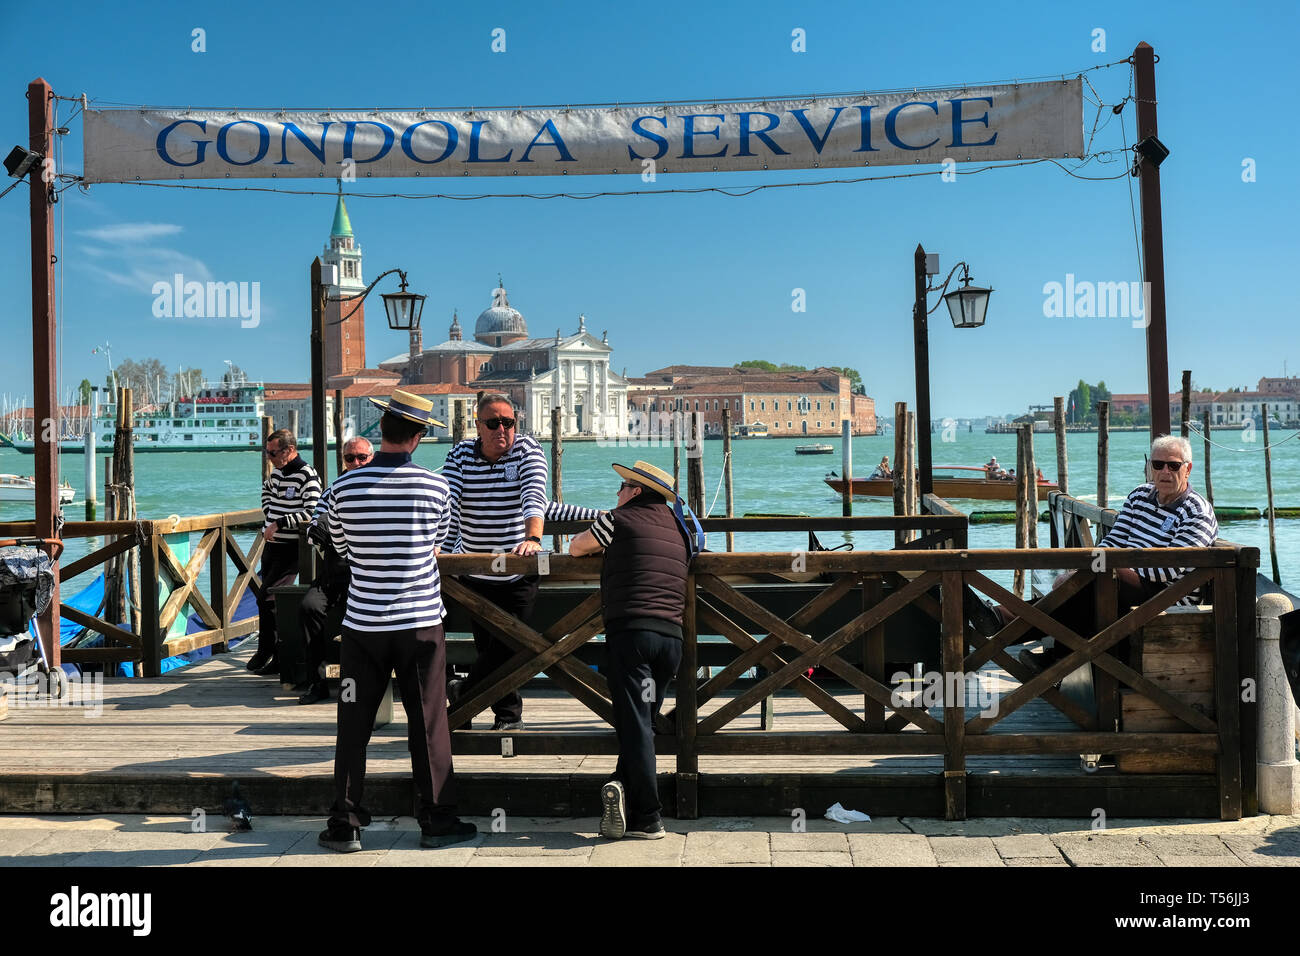 Venise, Italie - 17 Avril 2019 : Gondoliers attendant à gondola service pour les clients à la place Saint Marc à Venise avec l'église San Giorgio Maggiore Banque D'Images